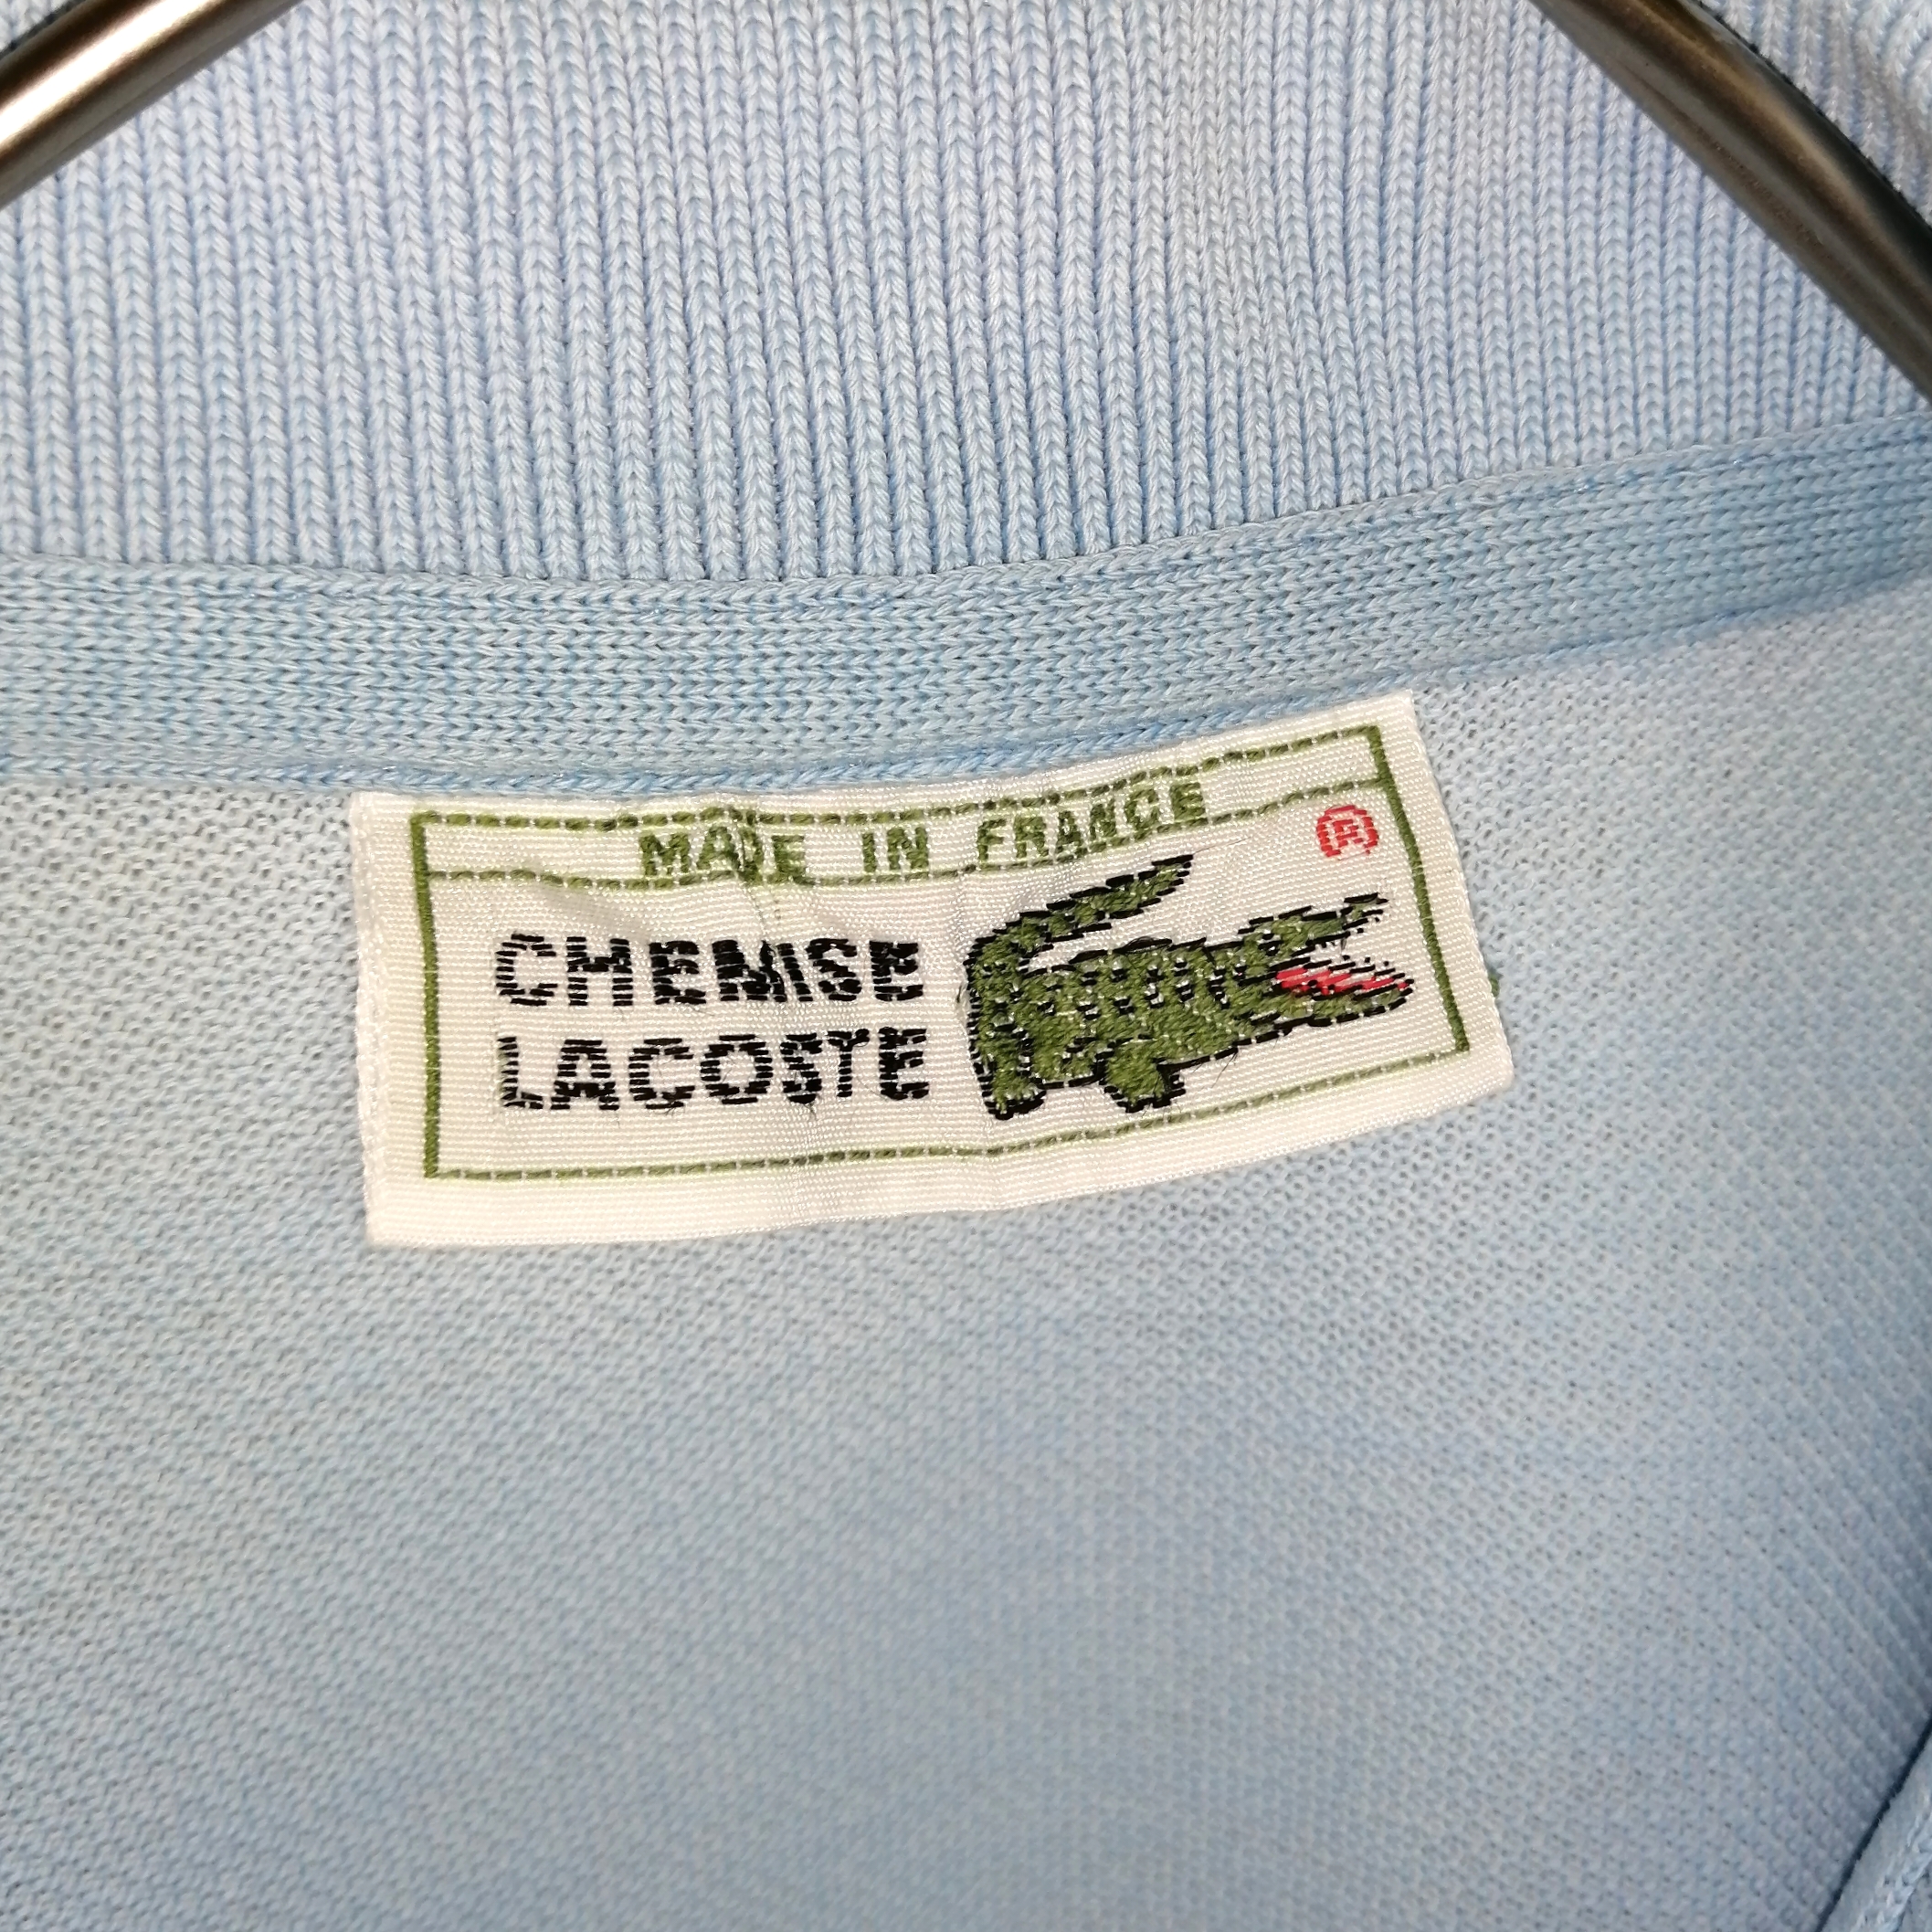 フランス製ヴィンテージ CHEMISE LACOSTEフレンチラコステポロシャツ 